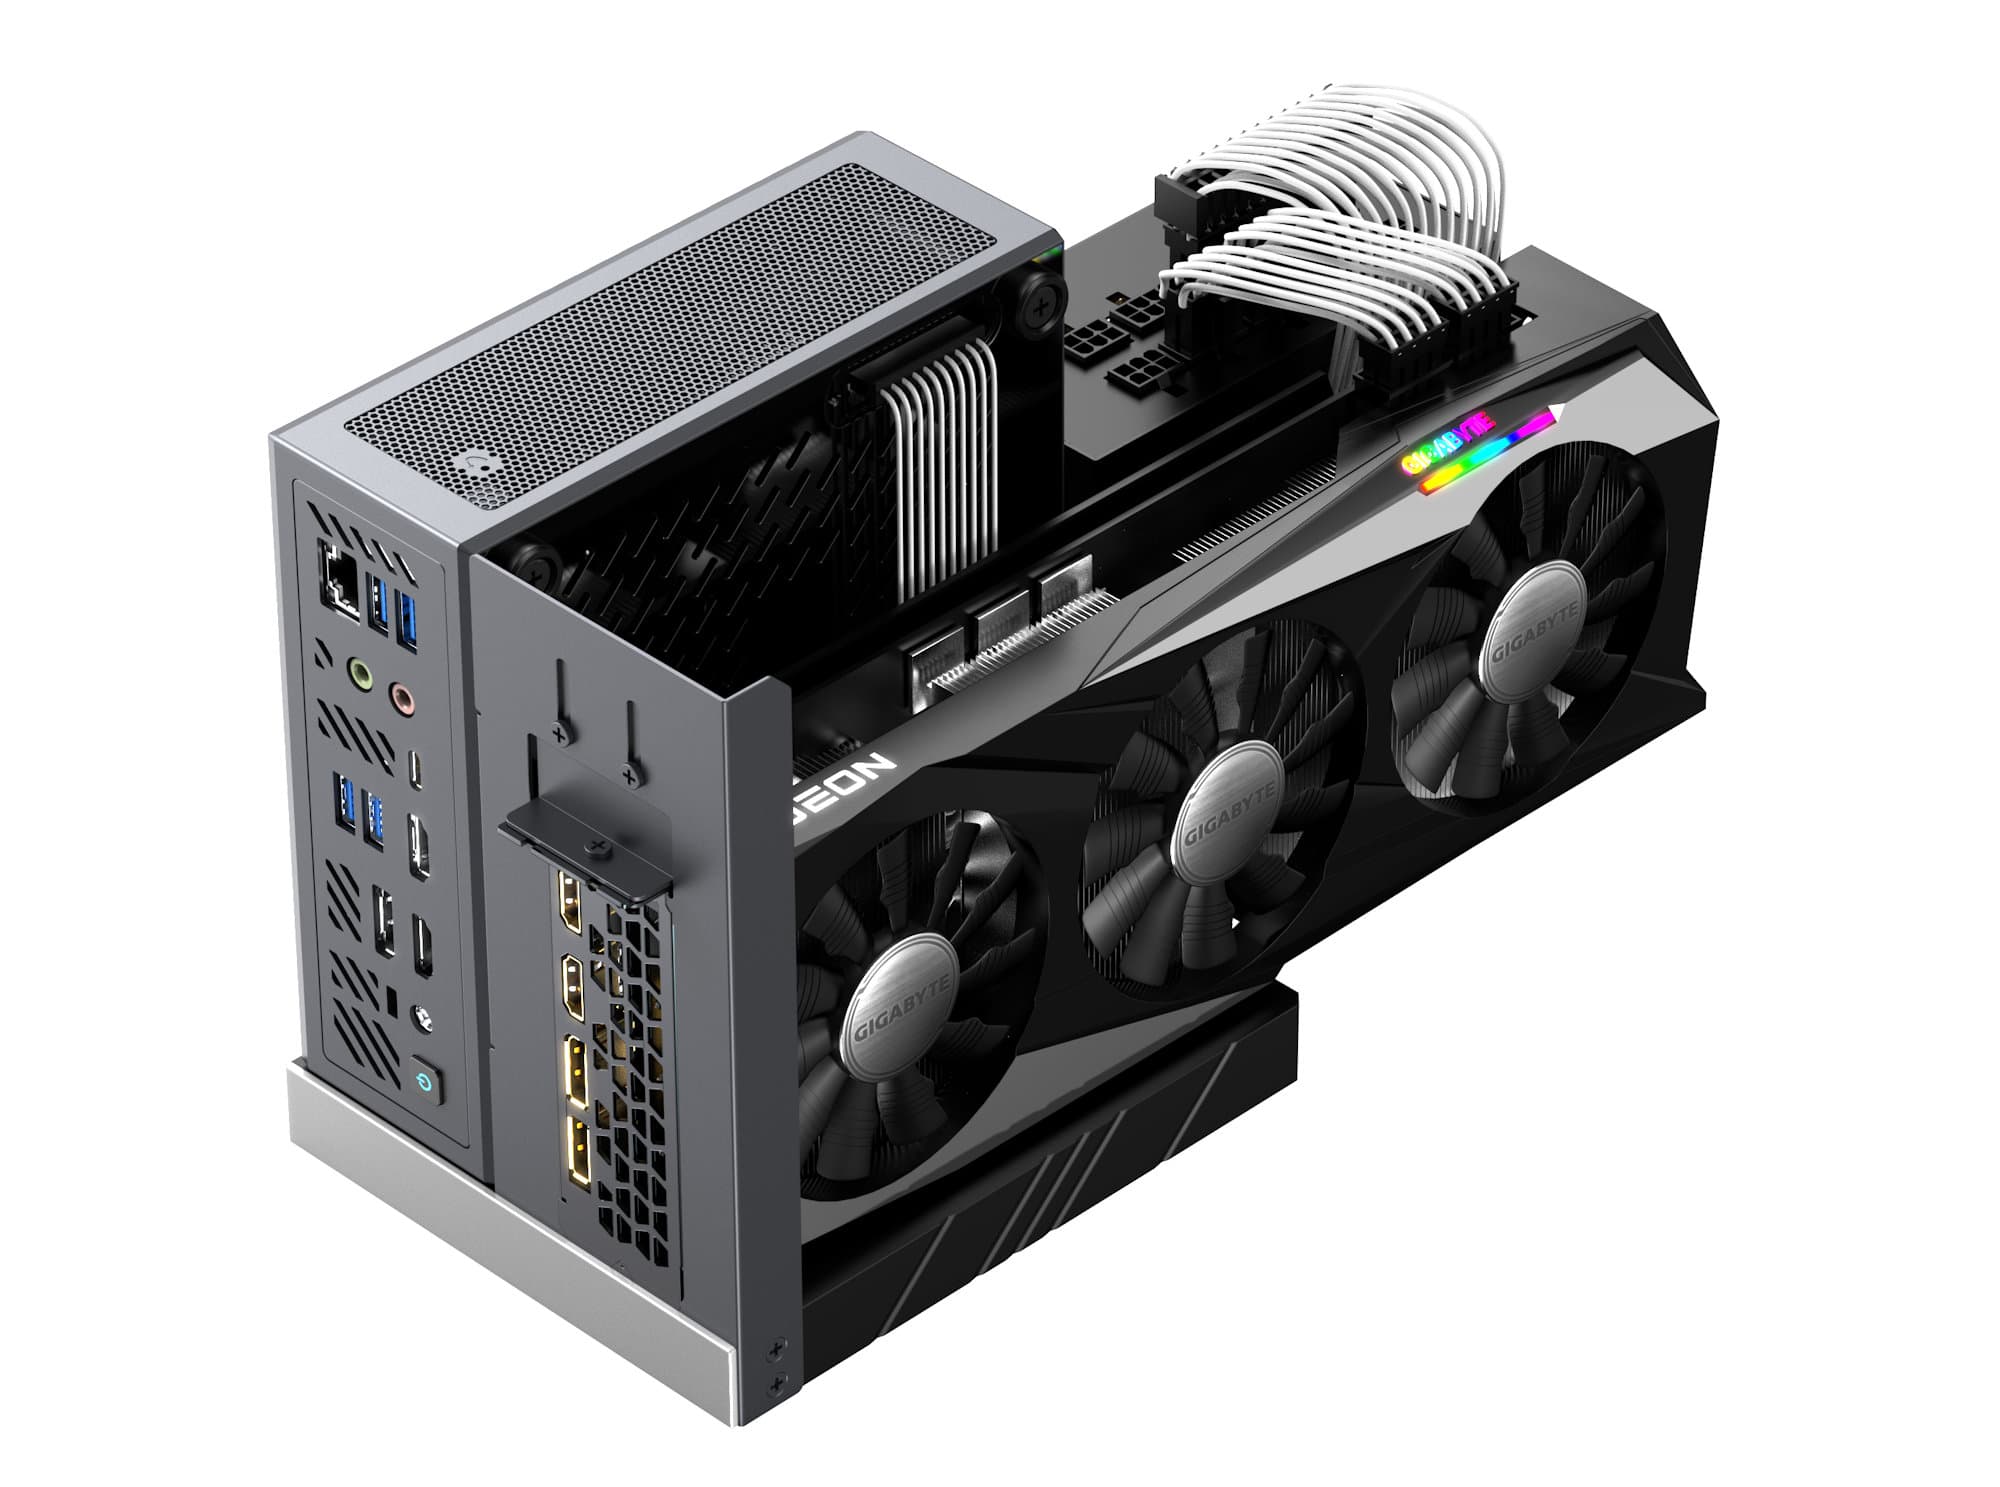 Minisforum présente un mini-PC en B550 avec GPU dédié ; enfin, si